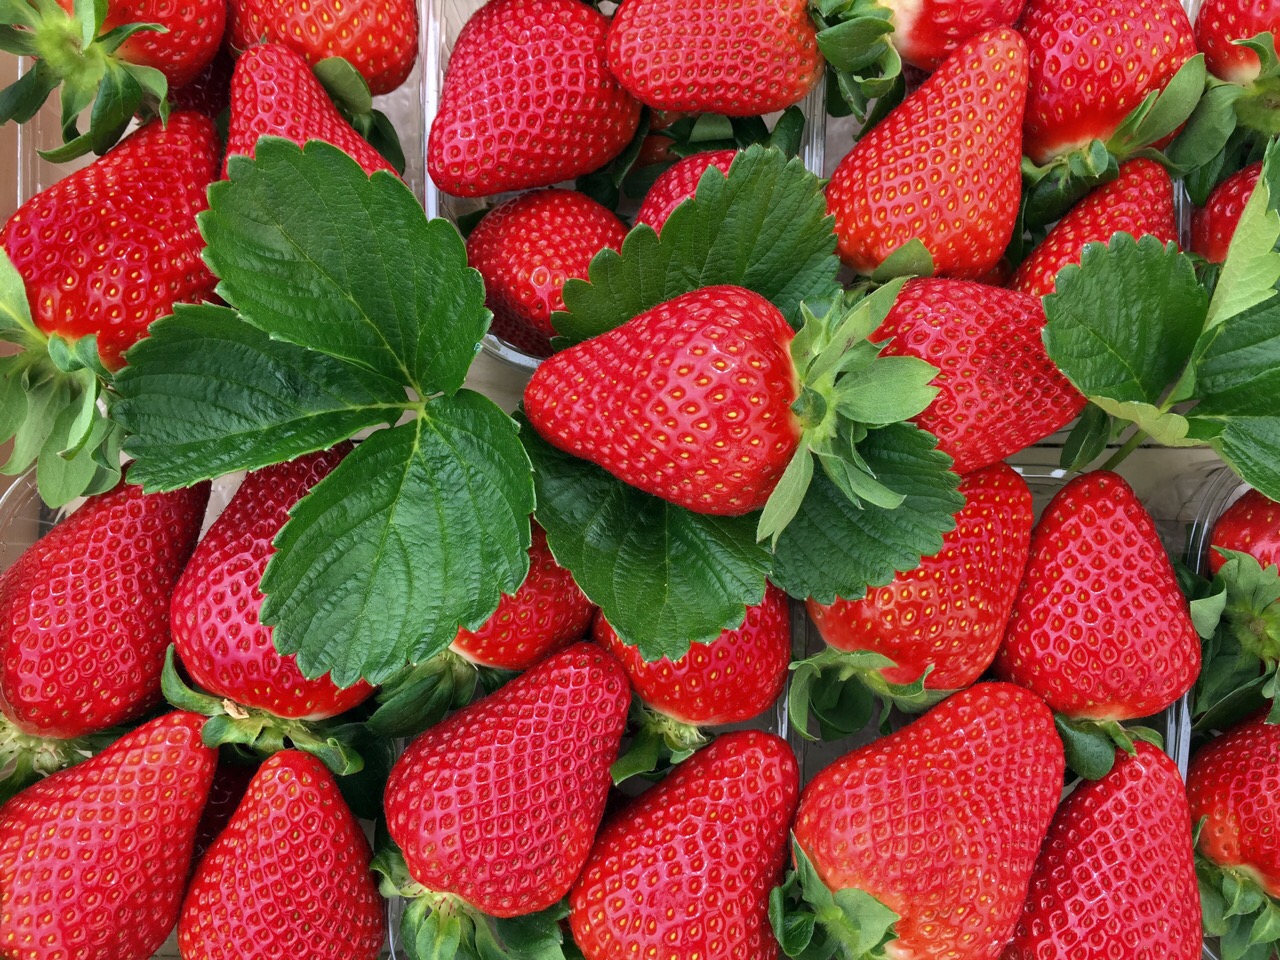 吃草莓有哪些好处？ - 草莓采摘园百科